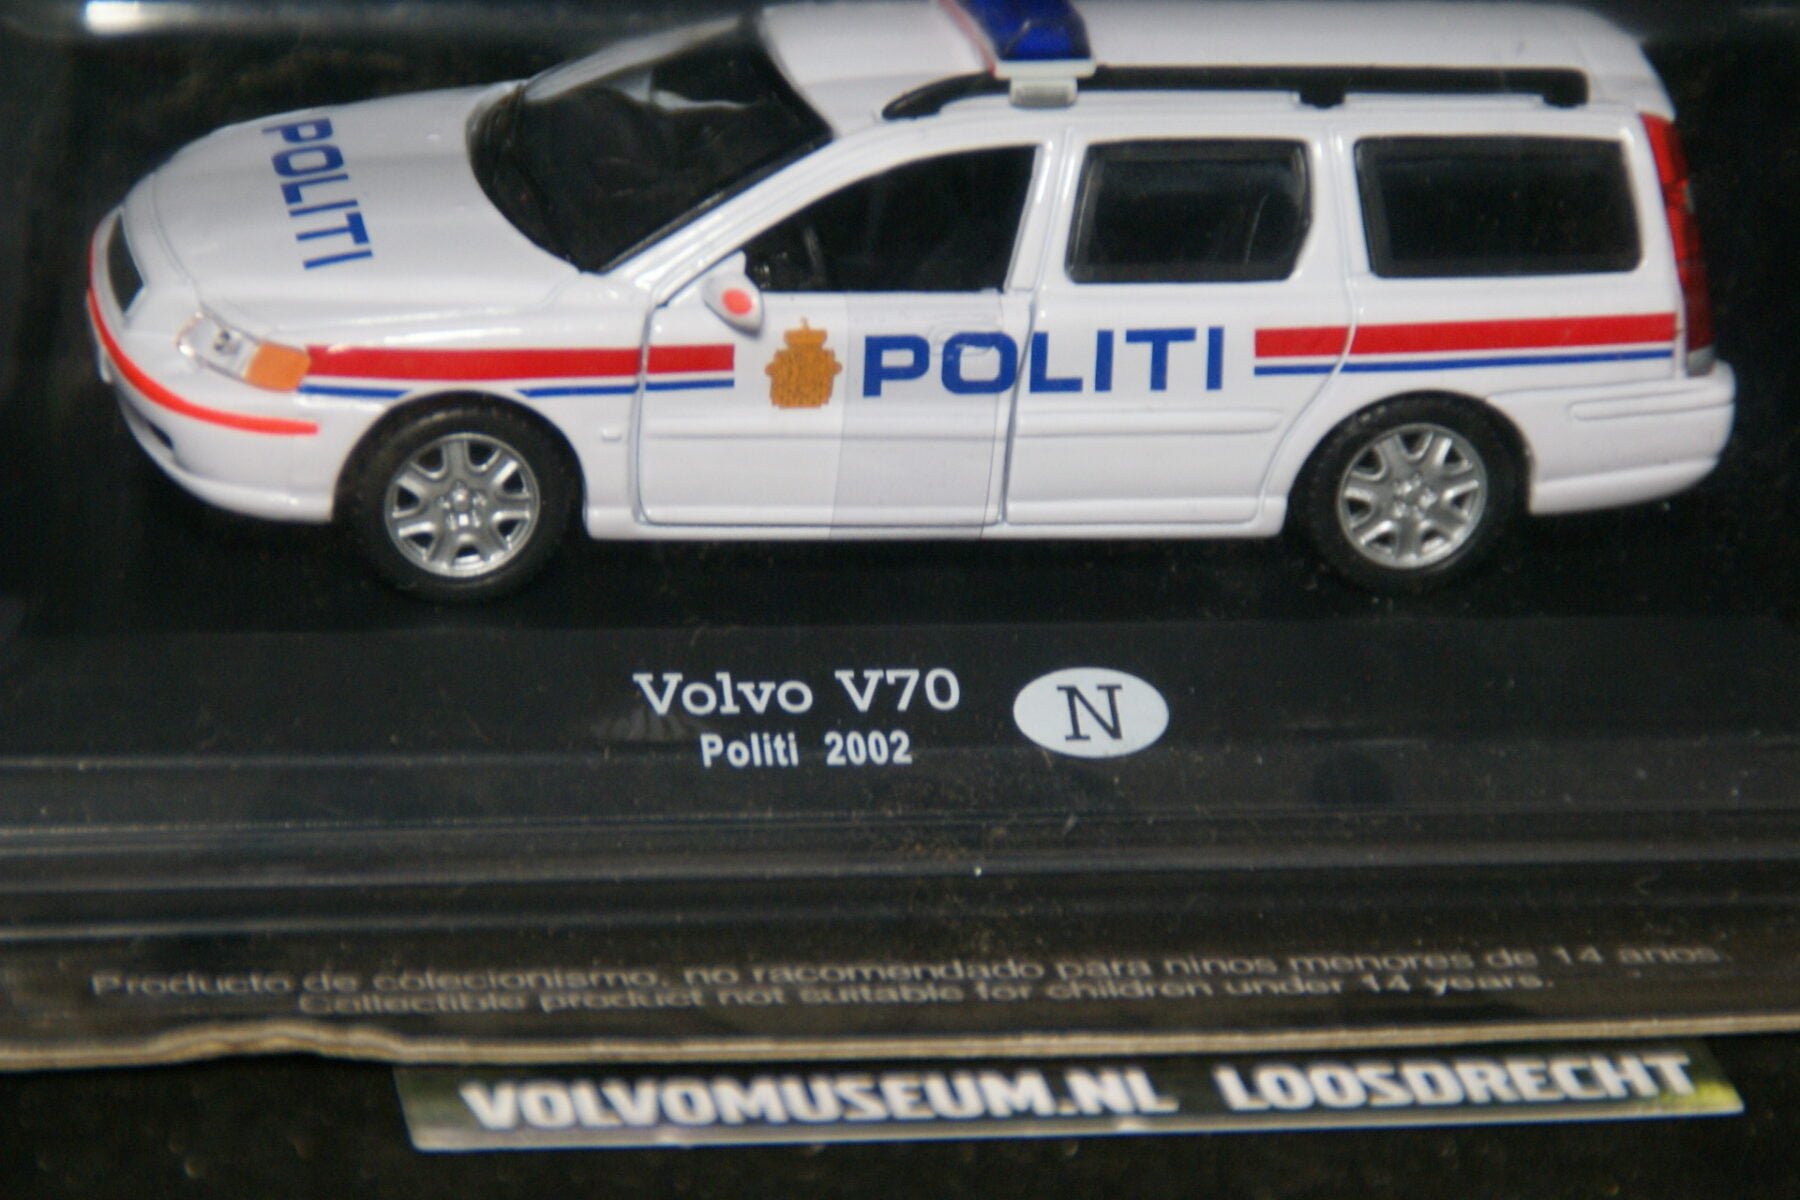 DSC02915 miniatuur 2002 Volvo V70 politi Noorwegen 1op43 MB